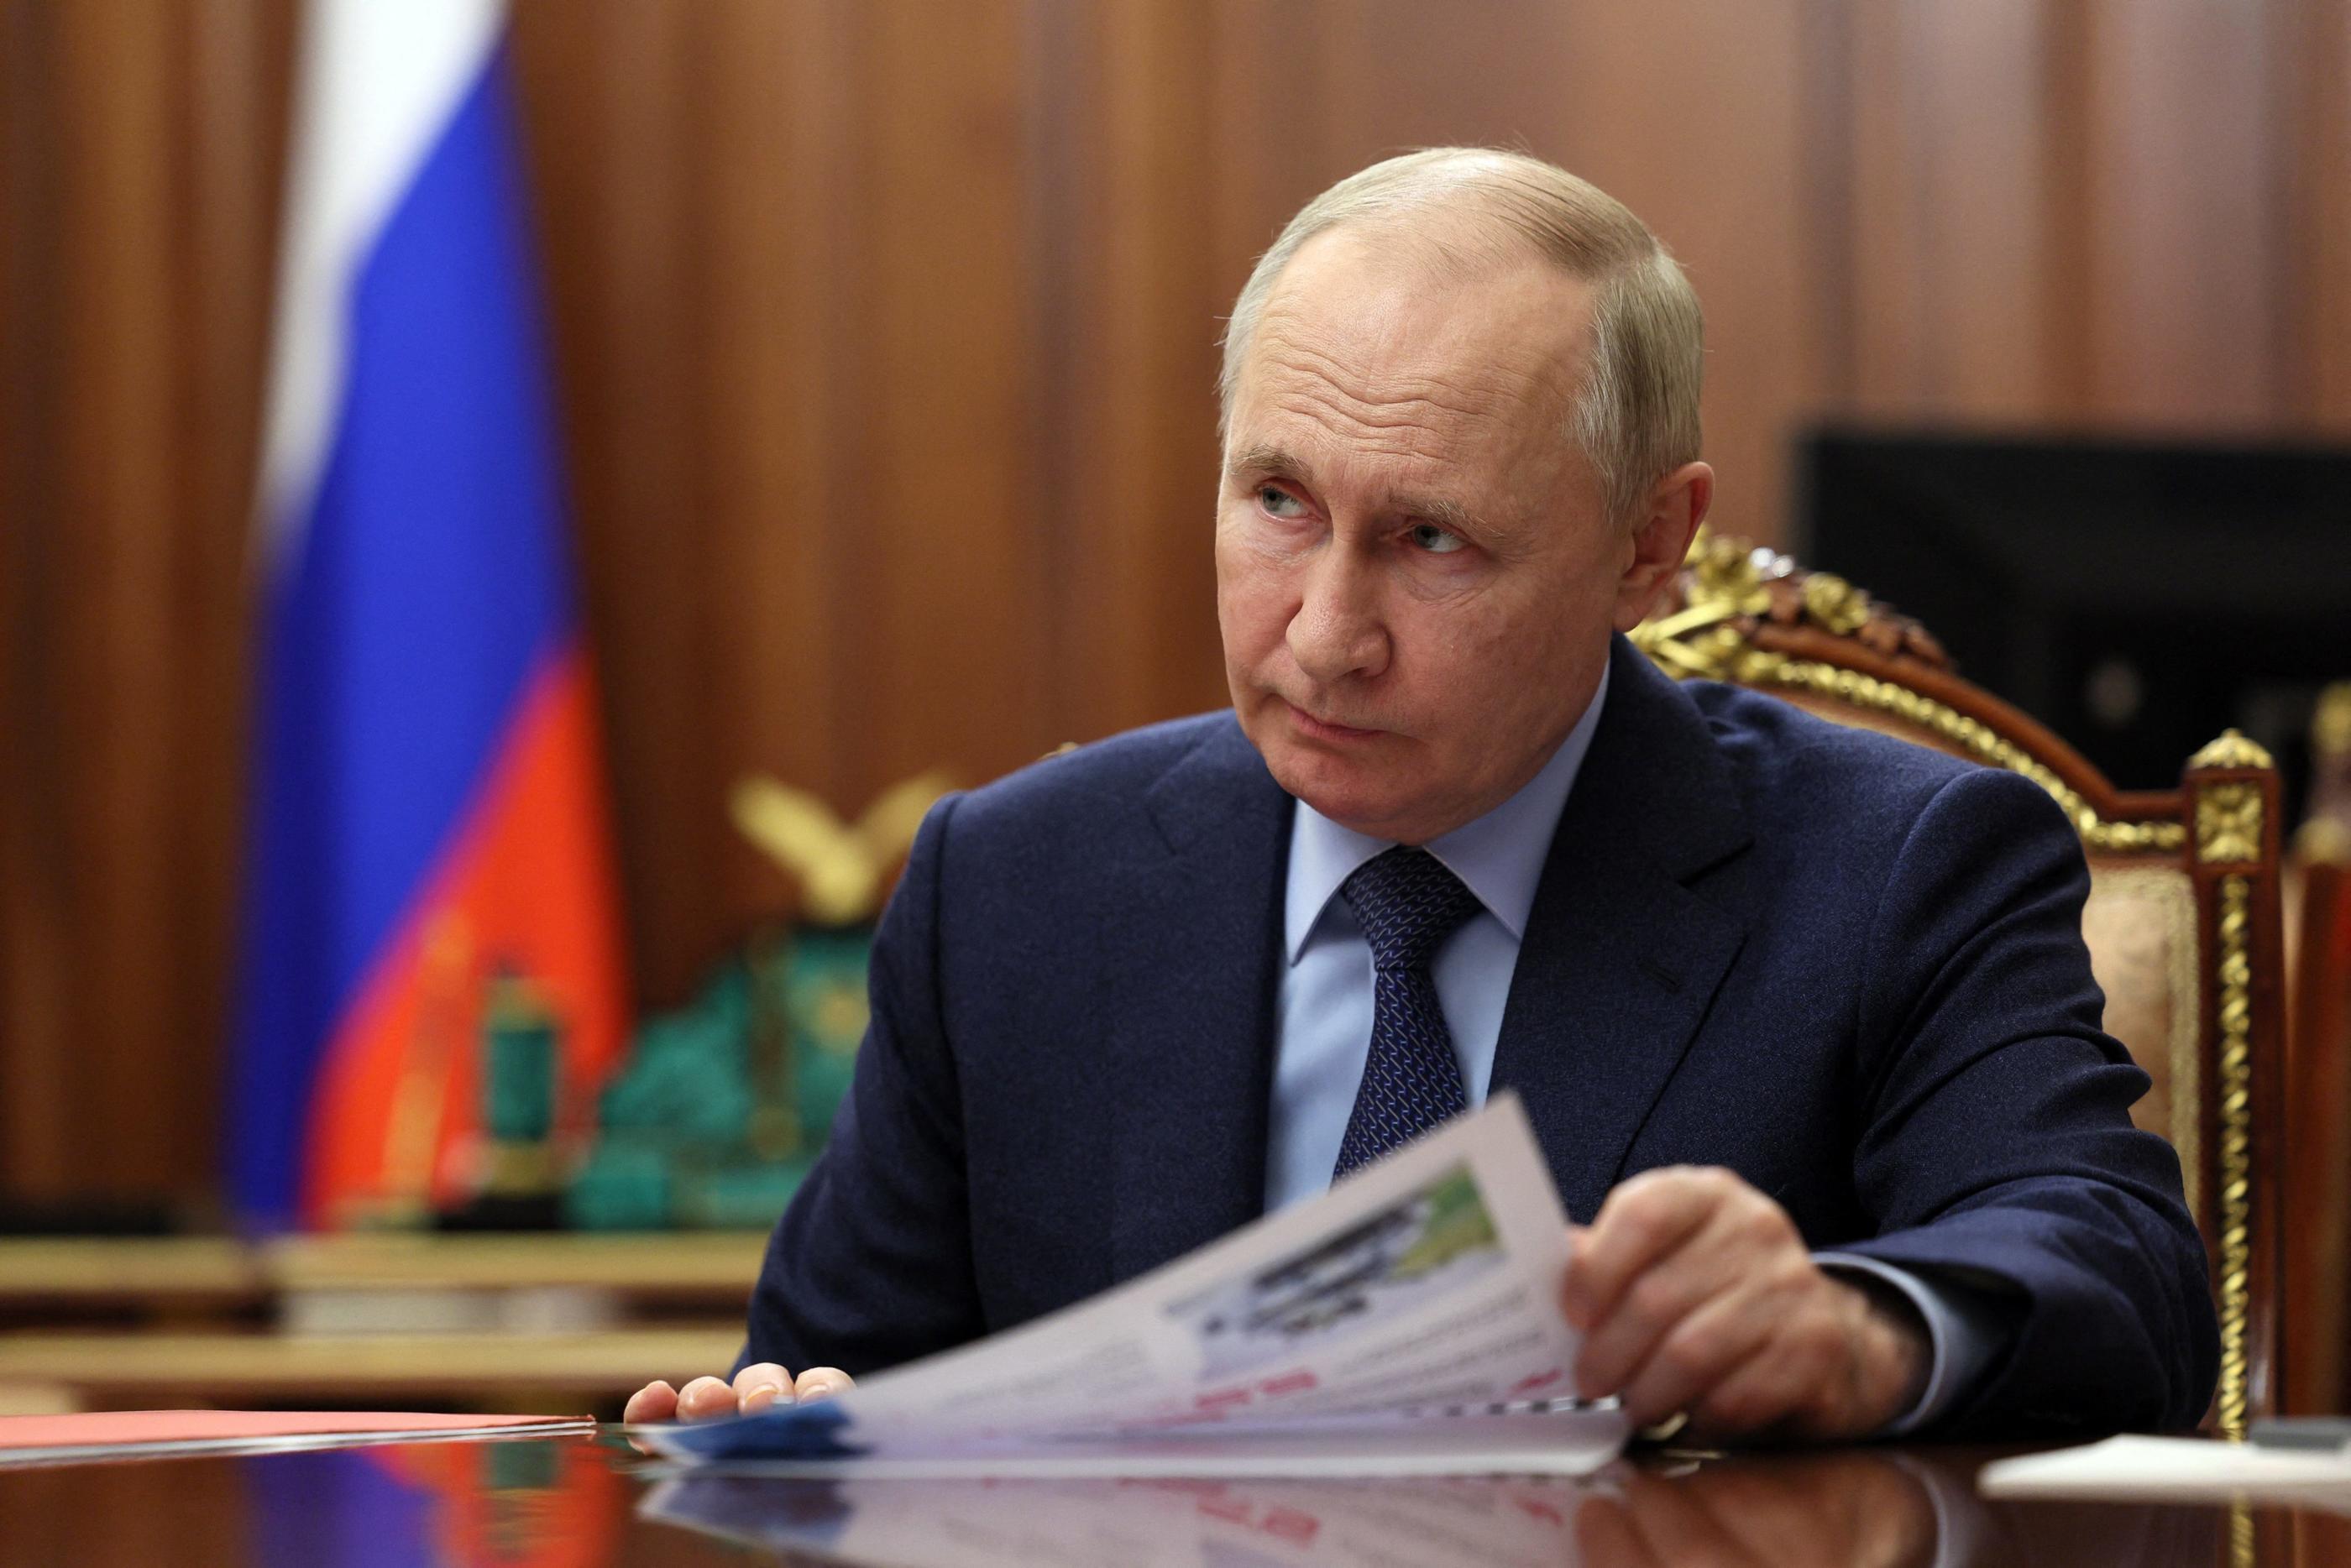 Selon un spécialiste, Poutine chercherait «à fragiliser la capacité du plus grand nombre à se faire une opinion éclairée sur les enjeux». EPA/MaxPPP/Kremlin pool/Sputnik/Gavriil Grigorov